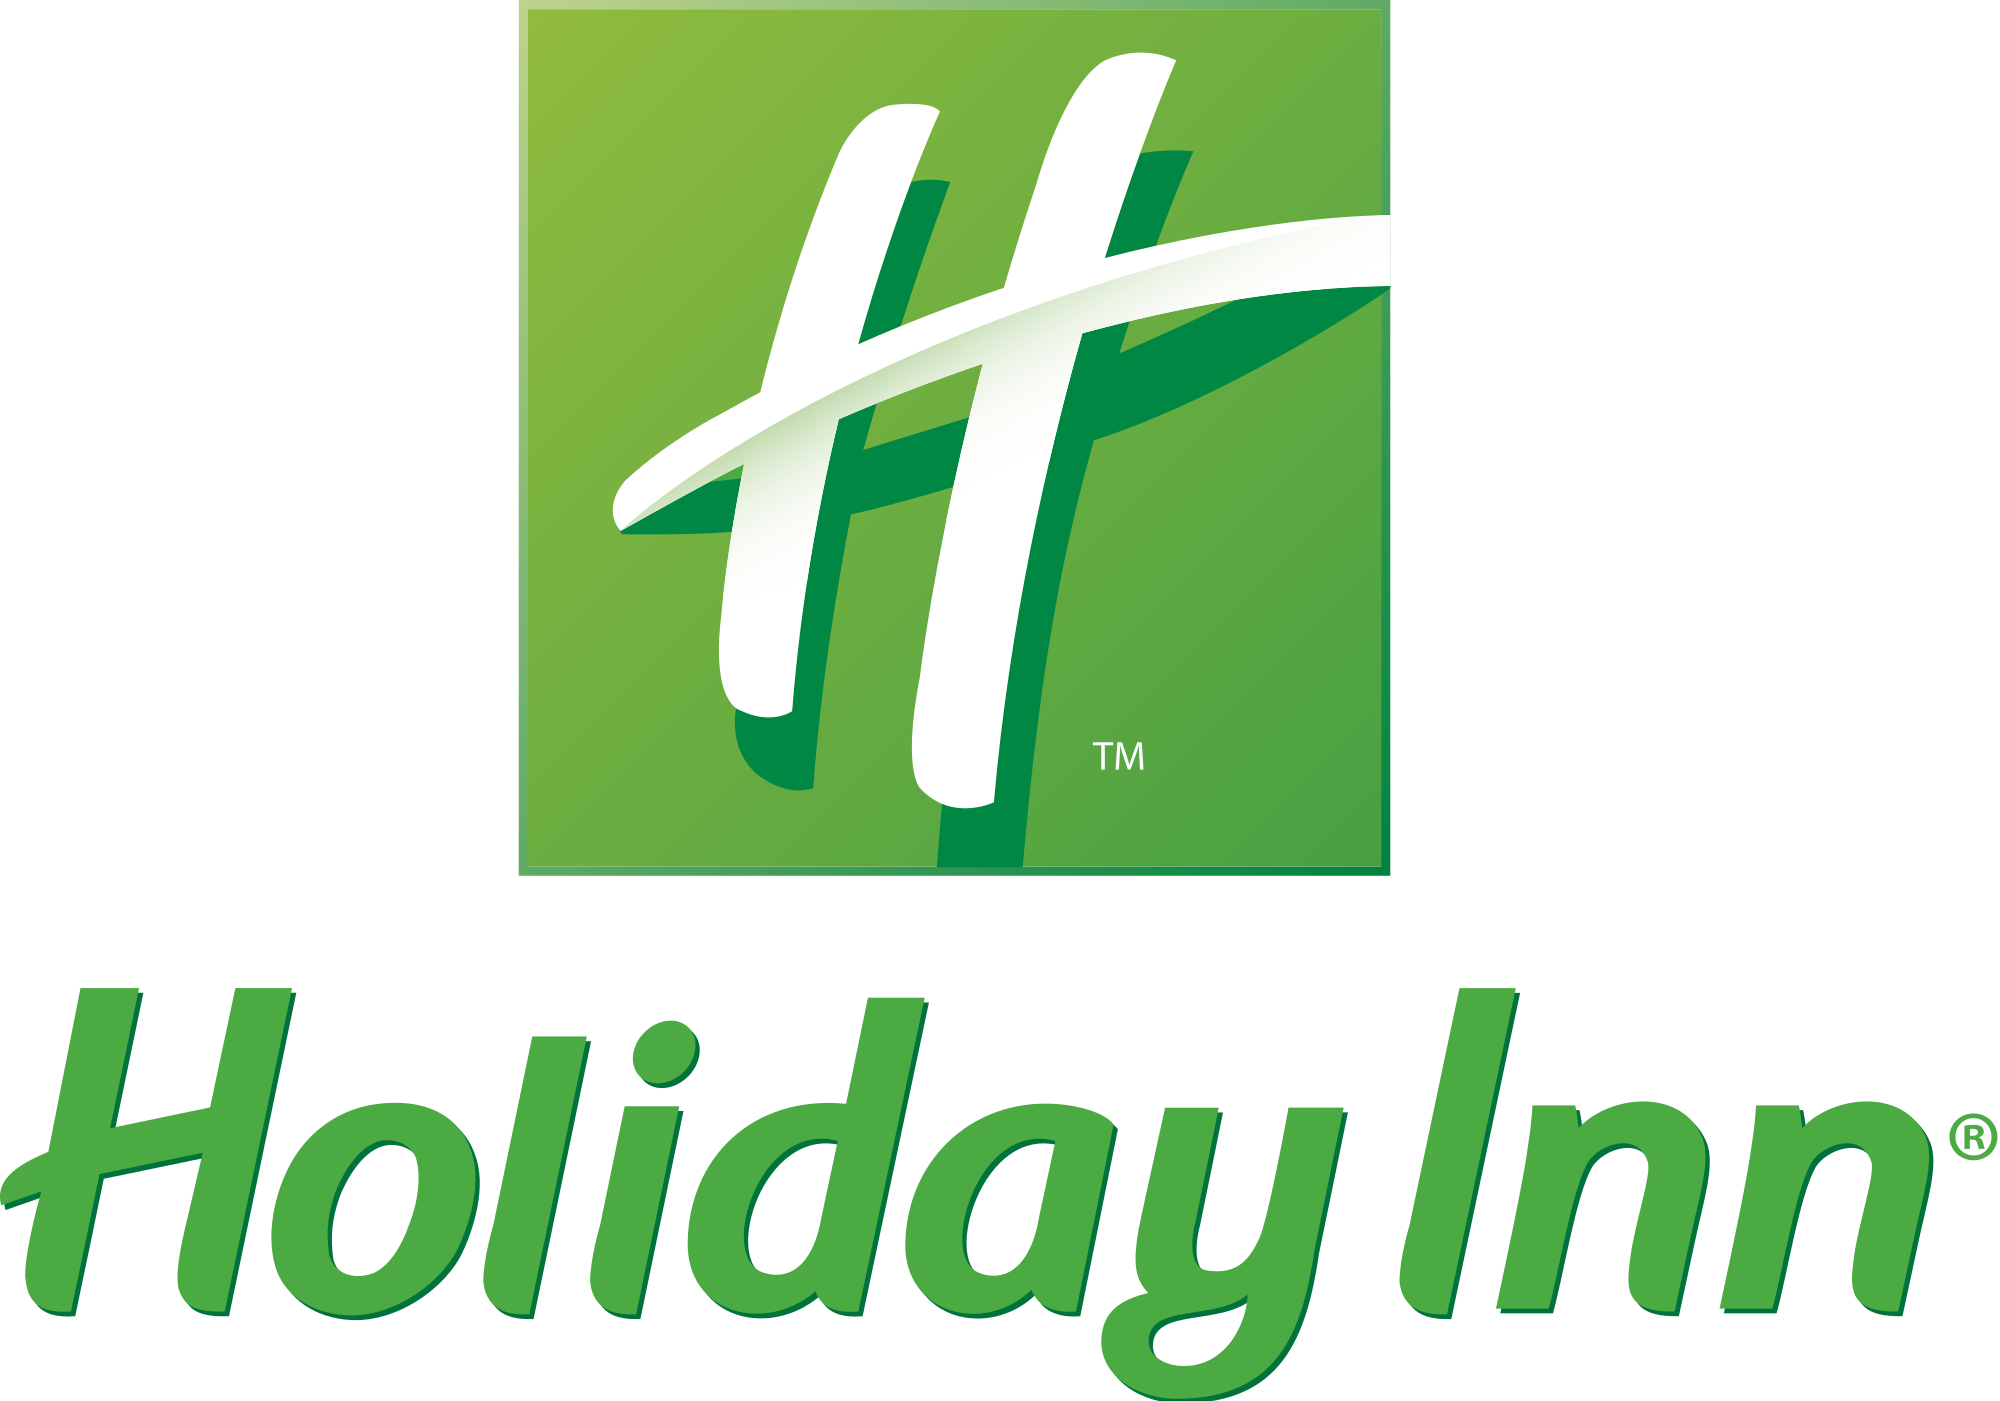 Holiday inn logo.png